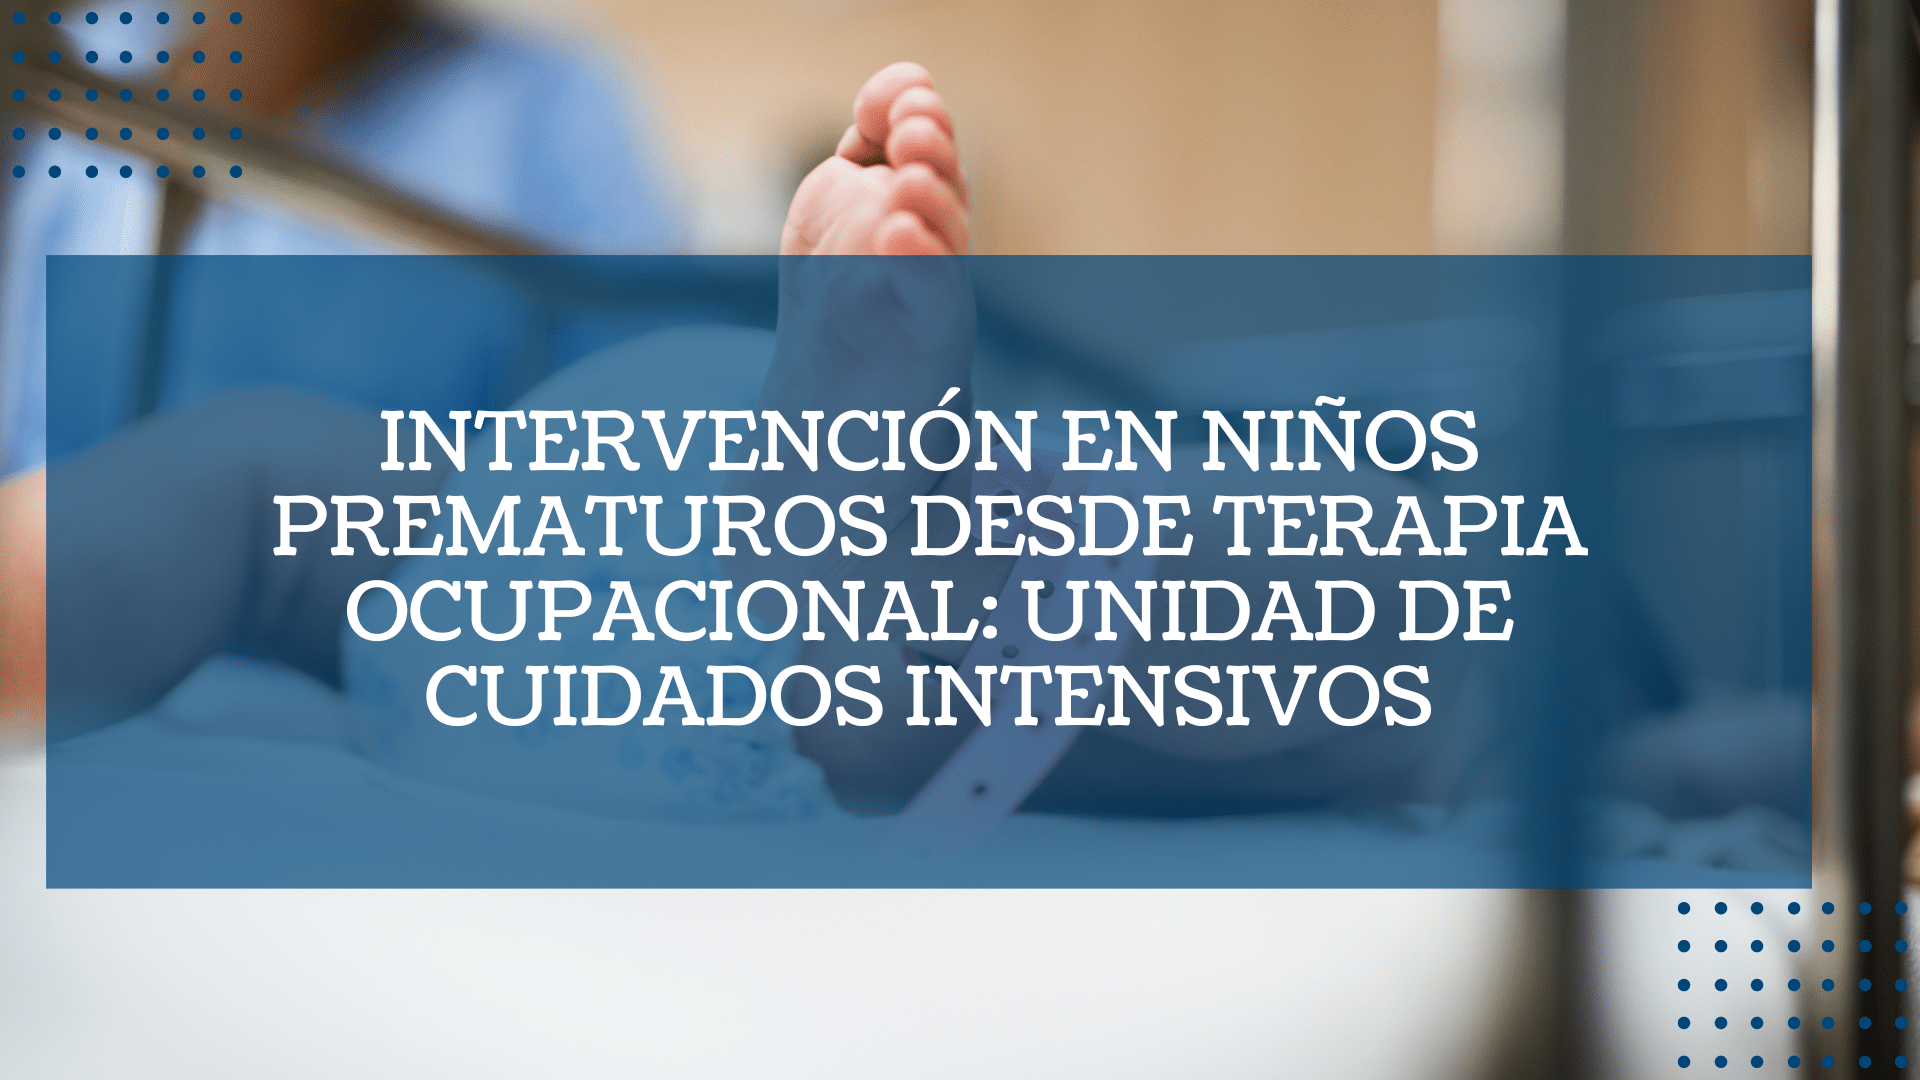 Intervencion en ninos prematuros desde terapia ocupacional unidad de cuidados intensivos